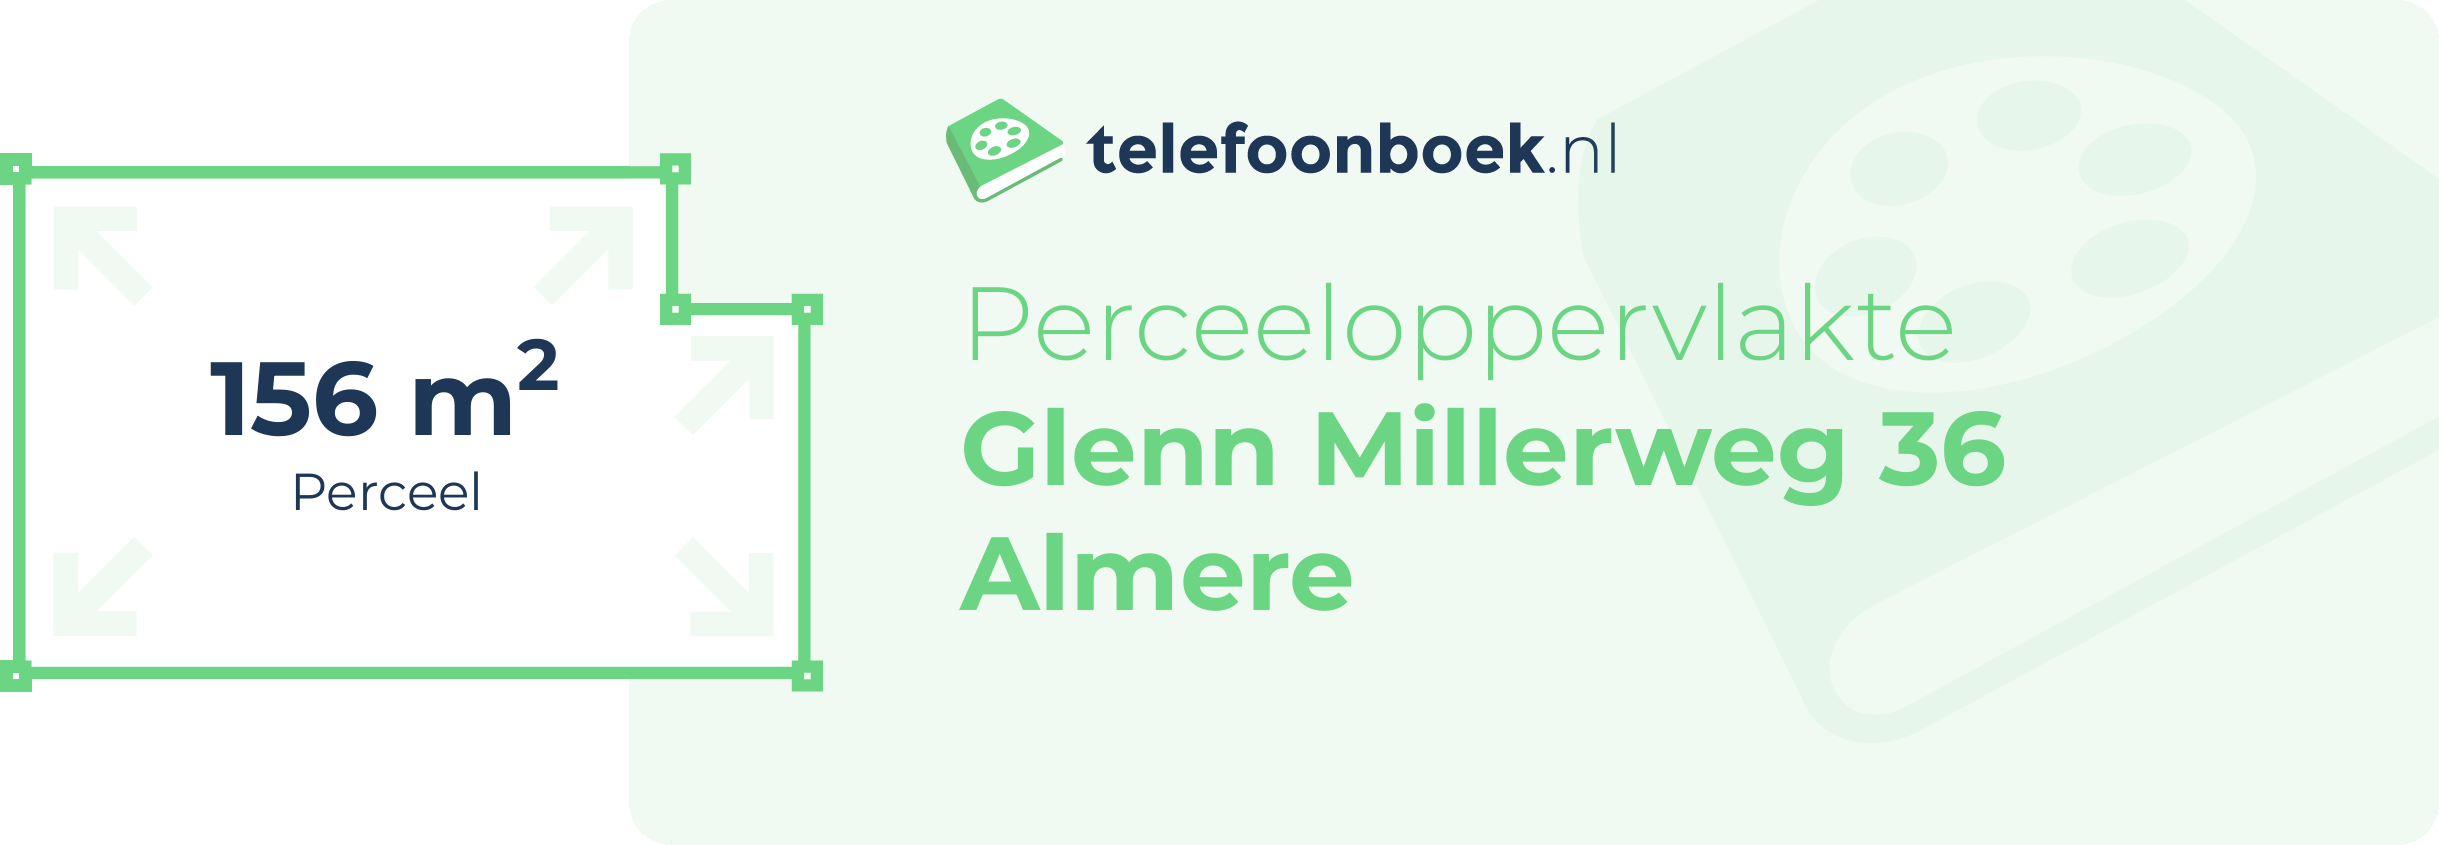 Perceeloppervlakte Glenn Millerweg 36 Almere